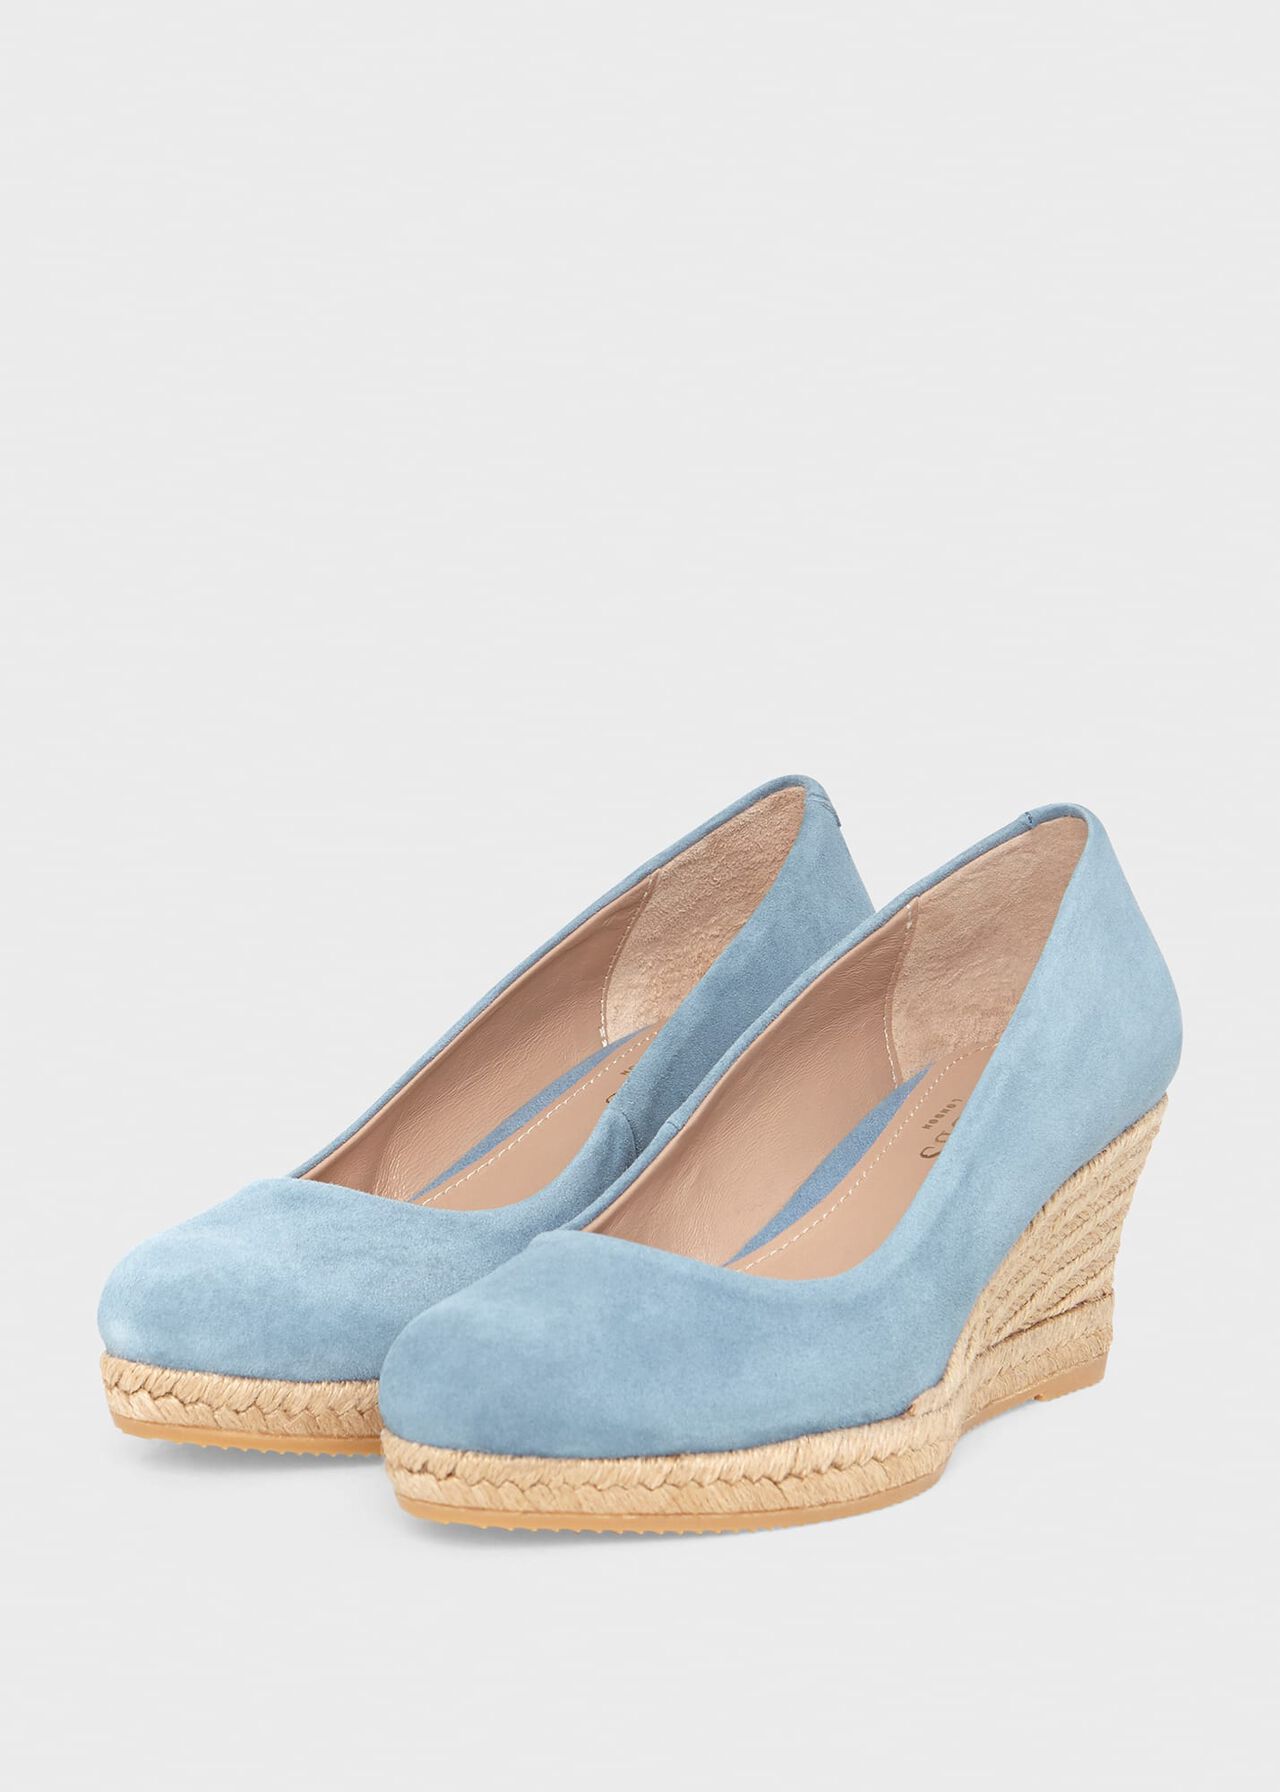 Anna Espadrille Court Shoes, Cornflower Blue, hi-res